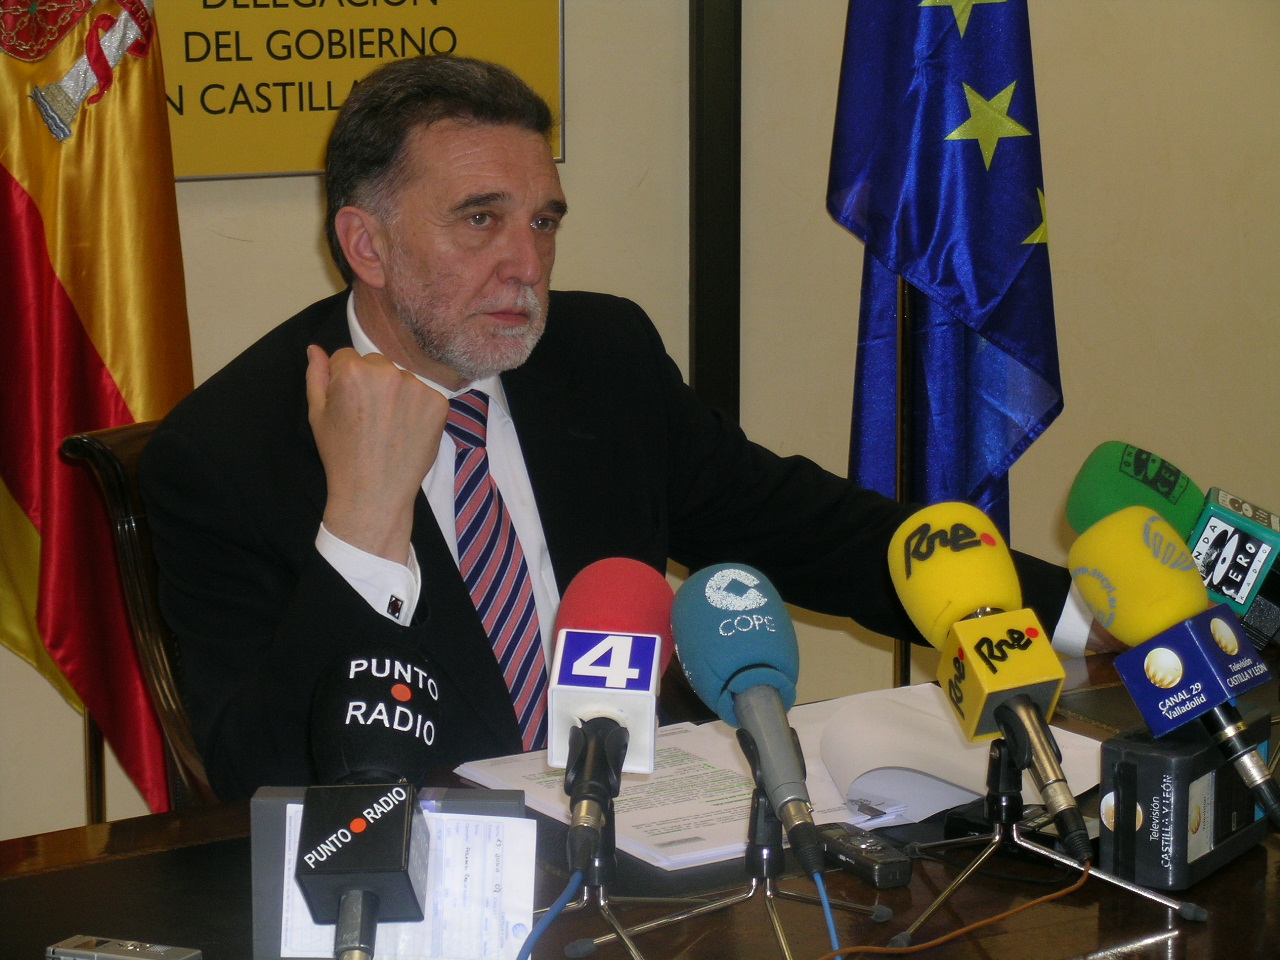 El delegado del Gobierno presentó el
<br/>Plan Verano 2008 en Castilla y León para hacer frente a las contingencias estivales